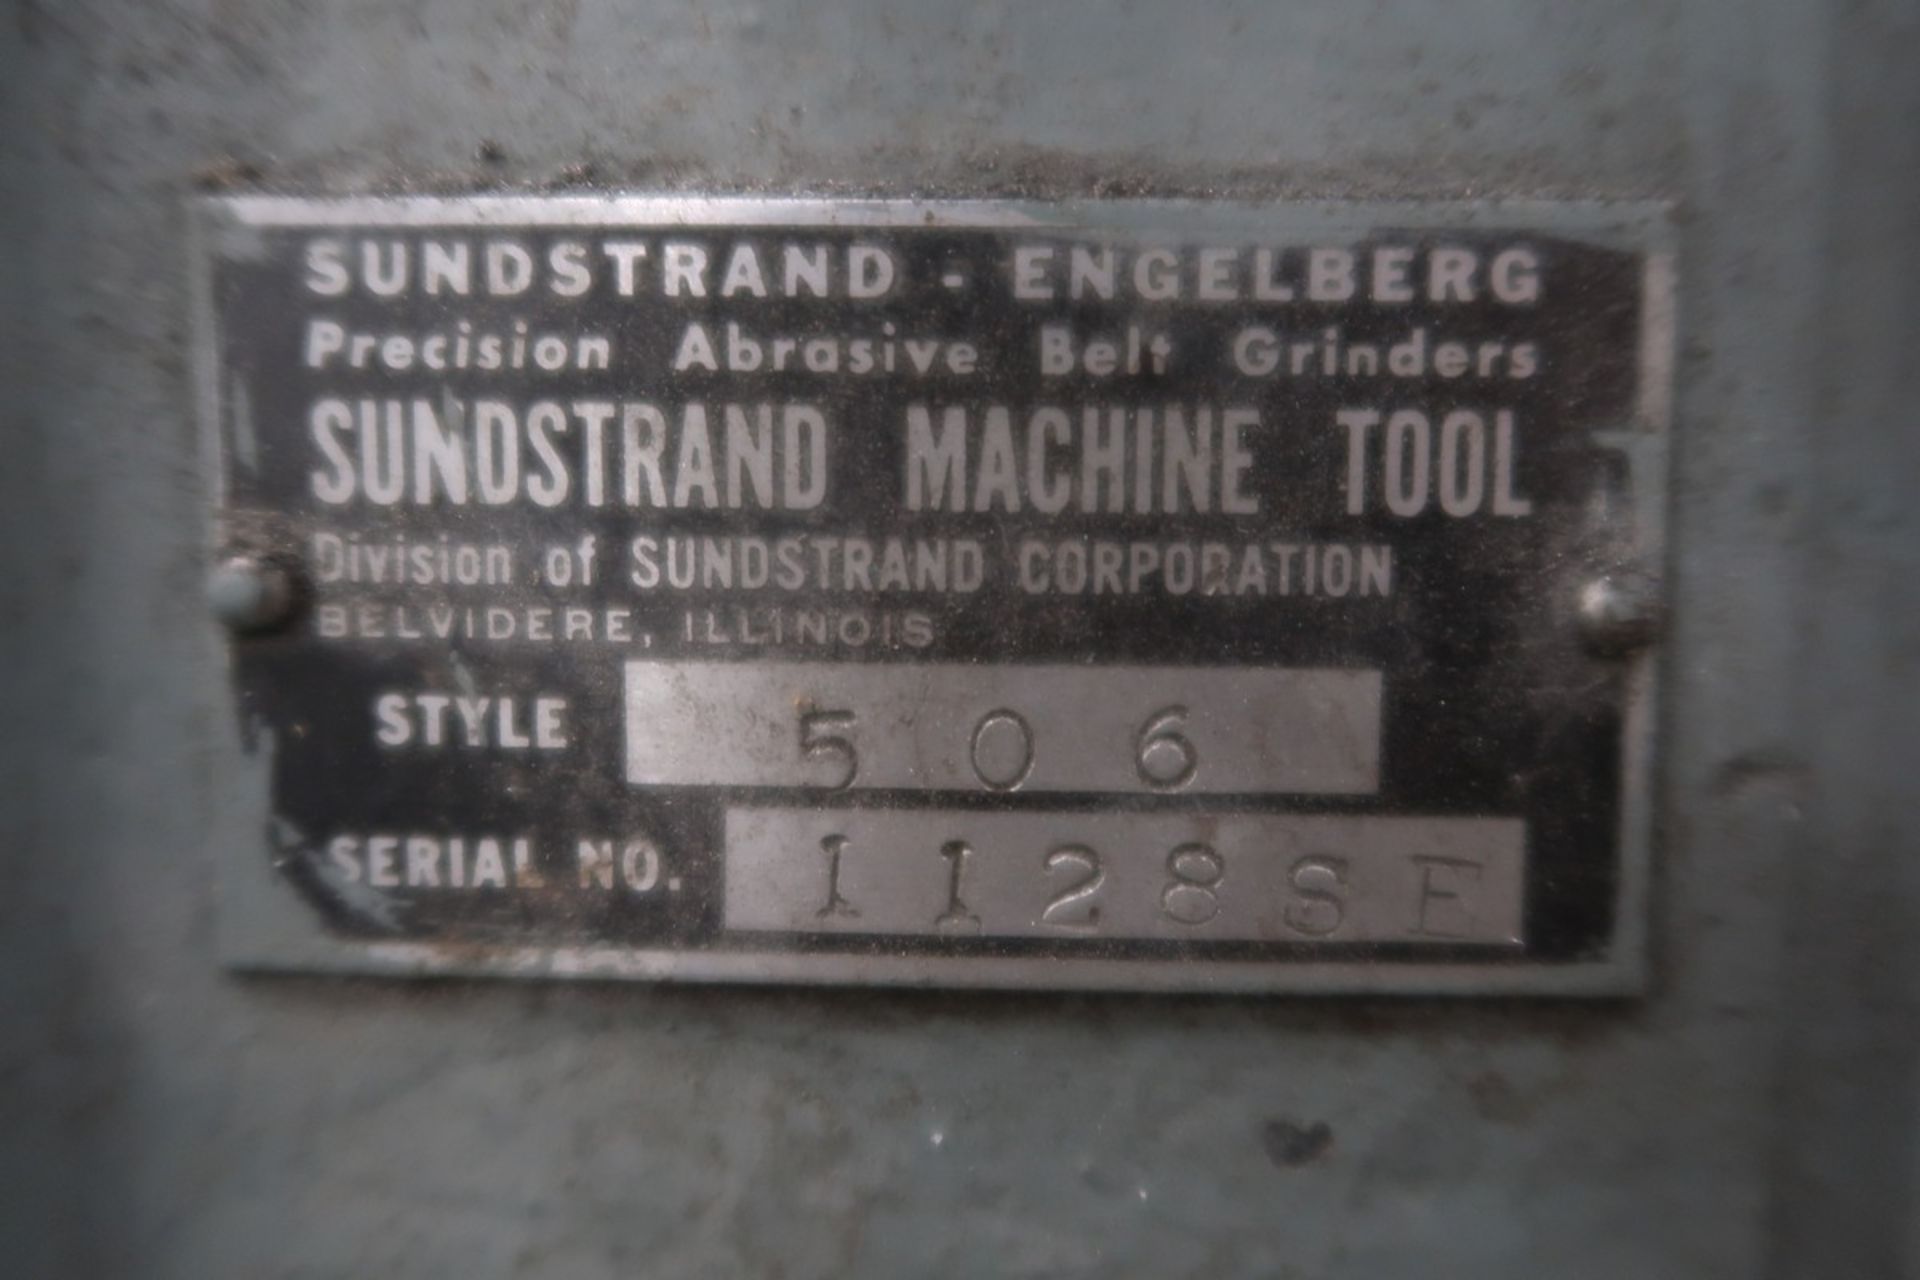 Sundstrand Model 506 6" Wet-Dry Belt Grinder - Bild 3 aus 3